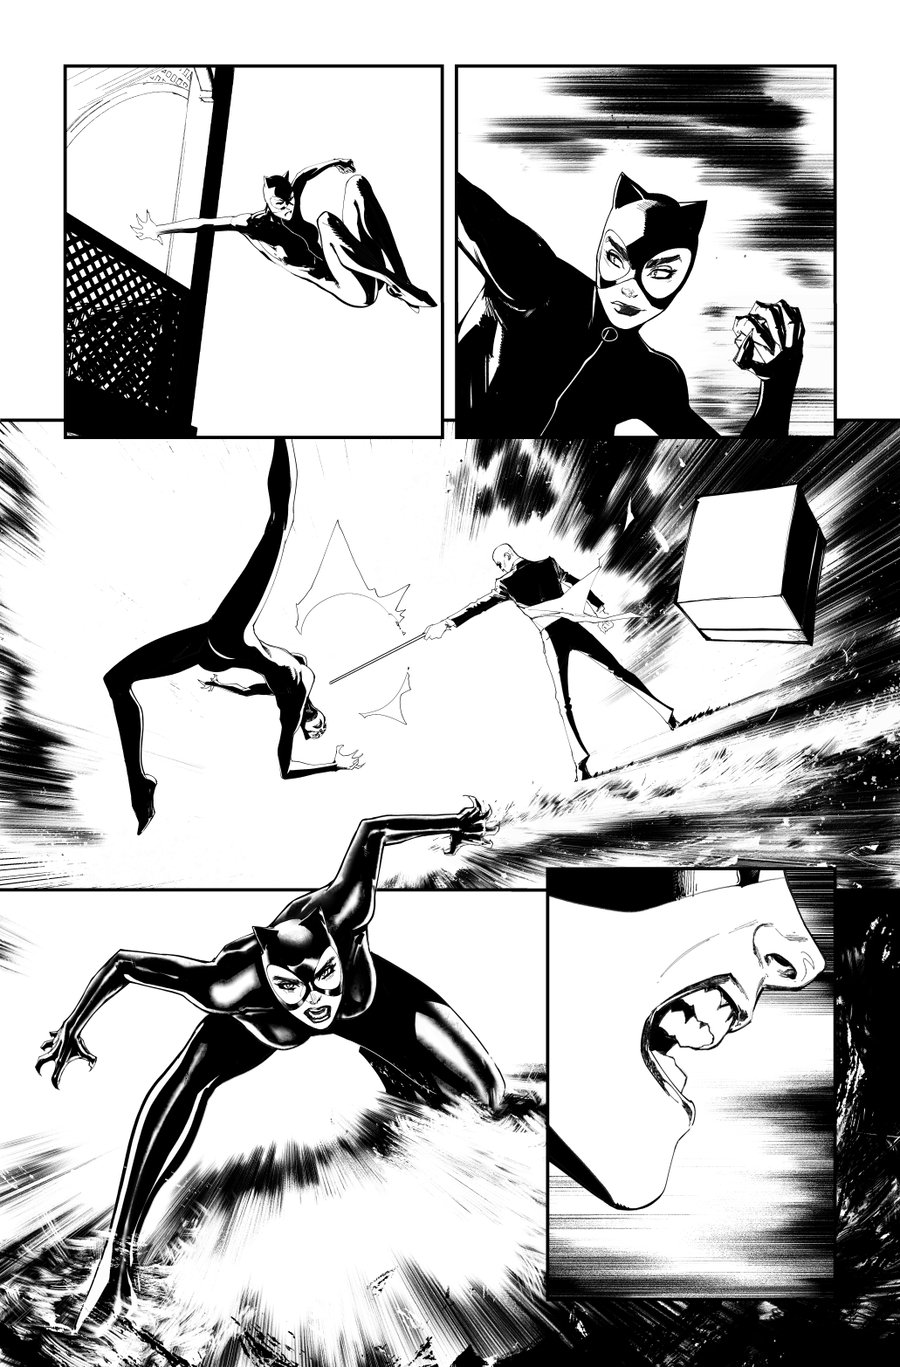 Image of BATMAN KILLING TIME #5 p.25